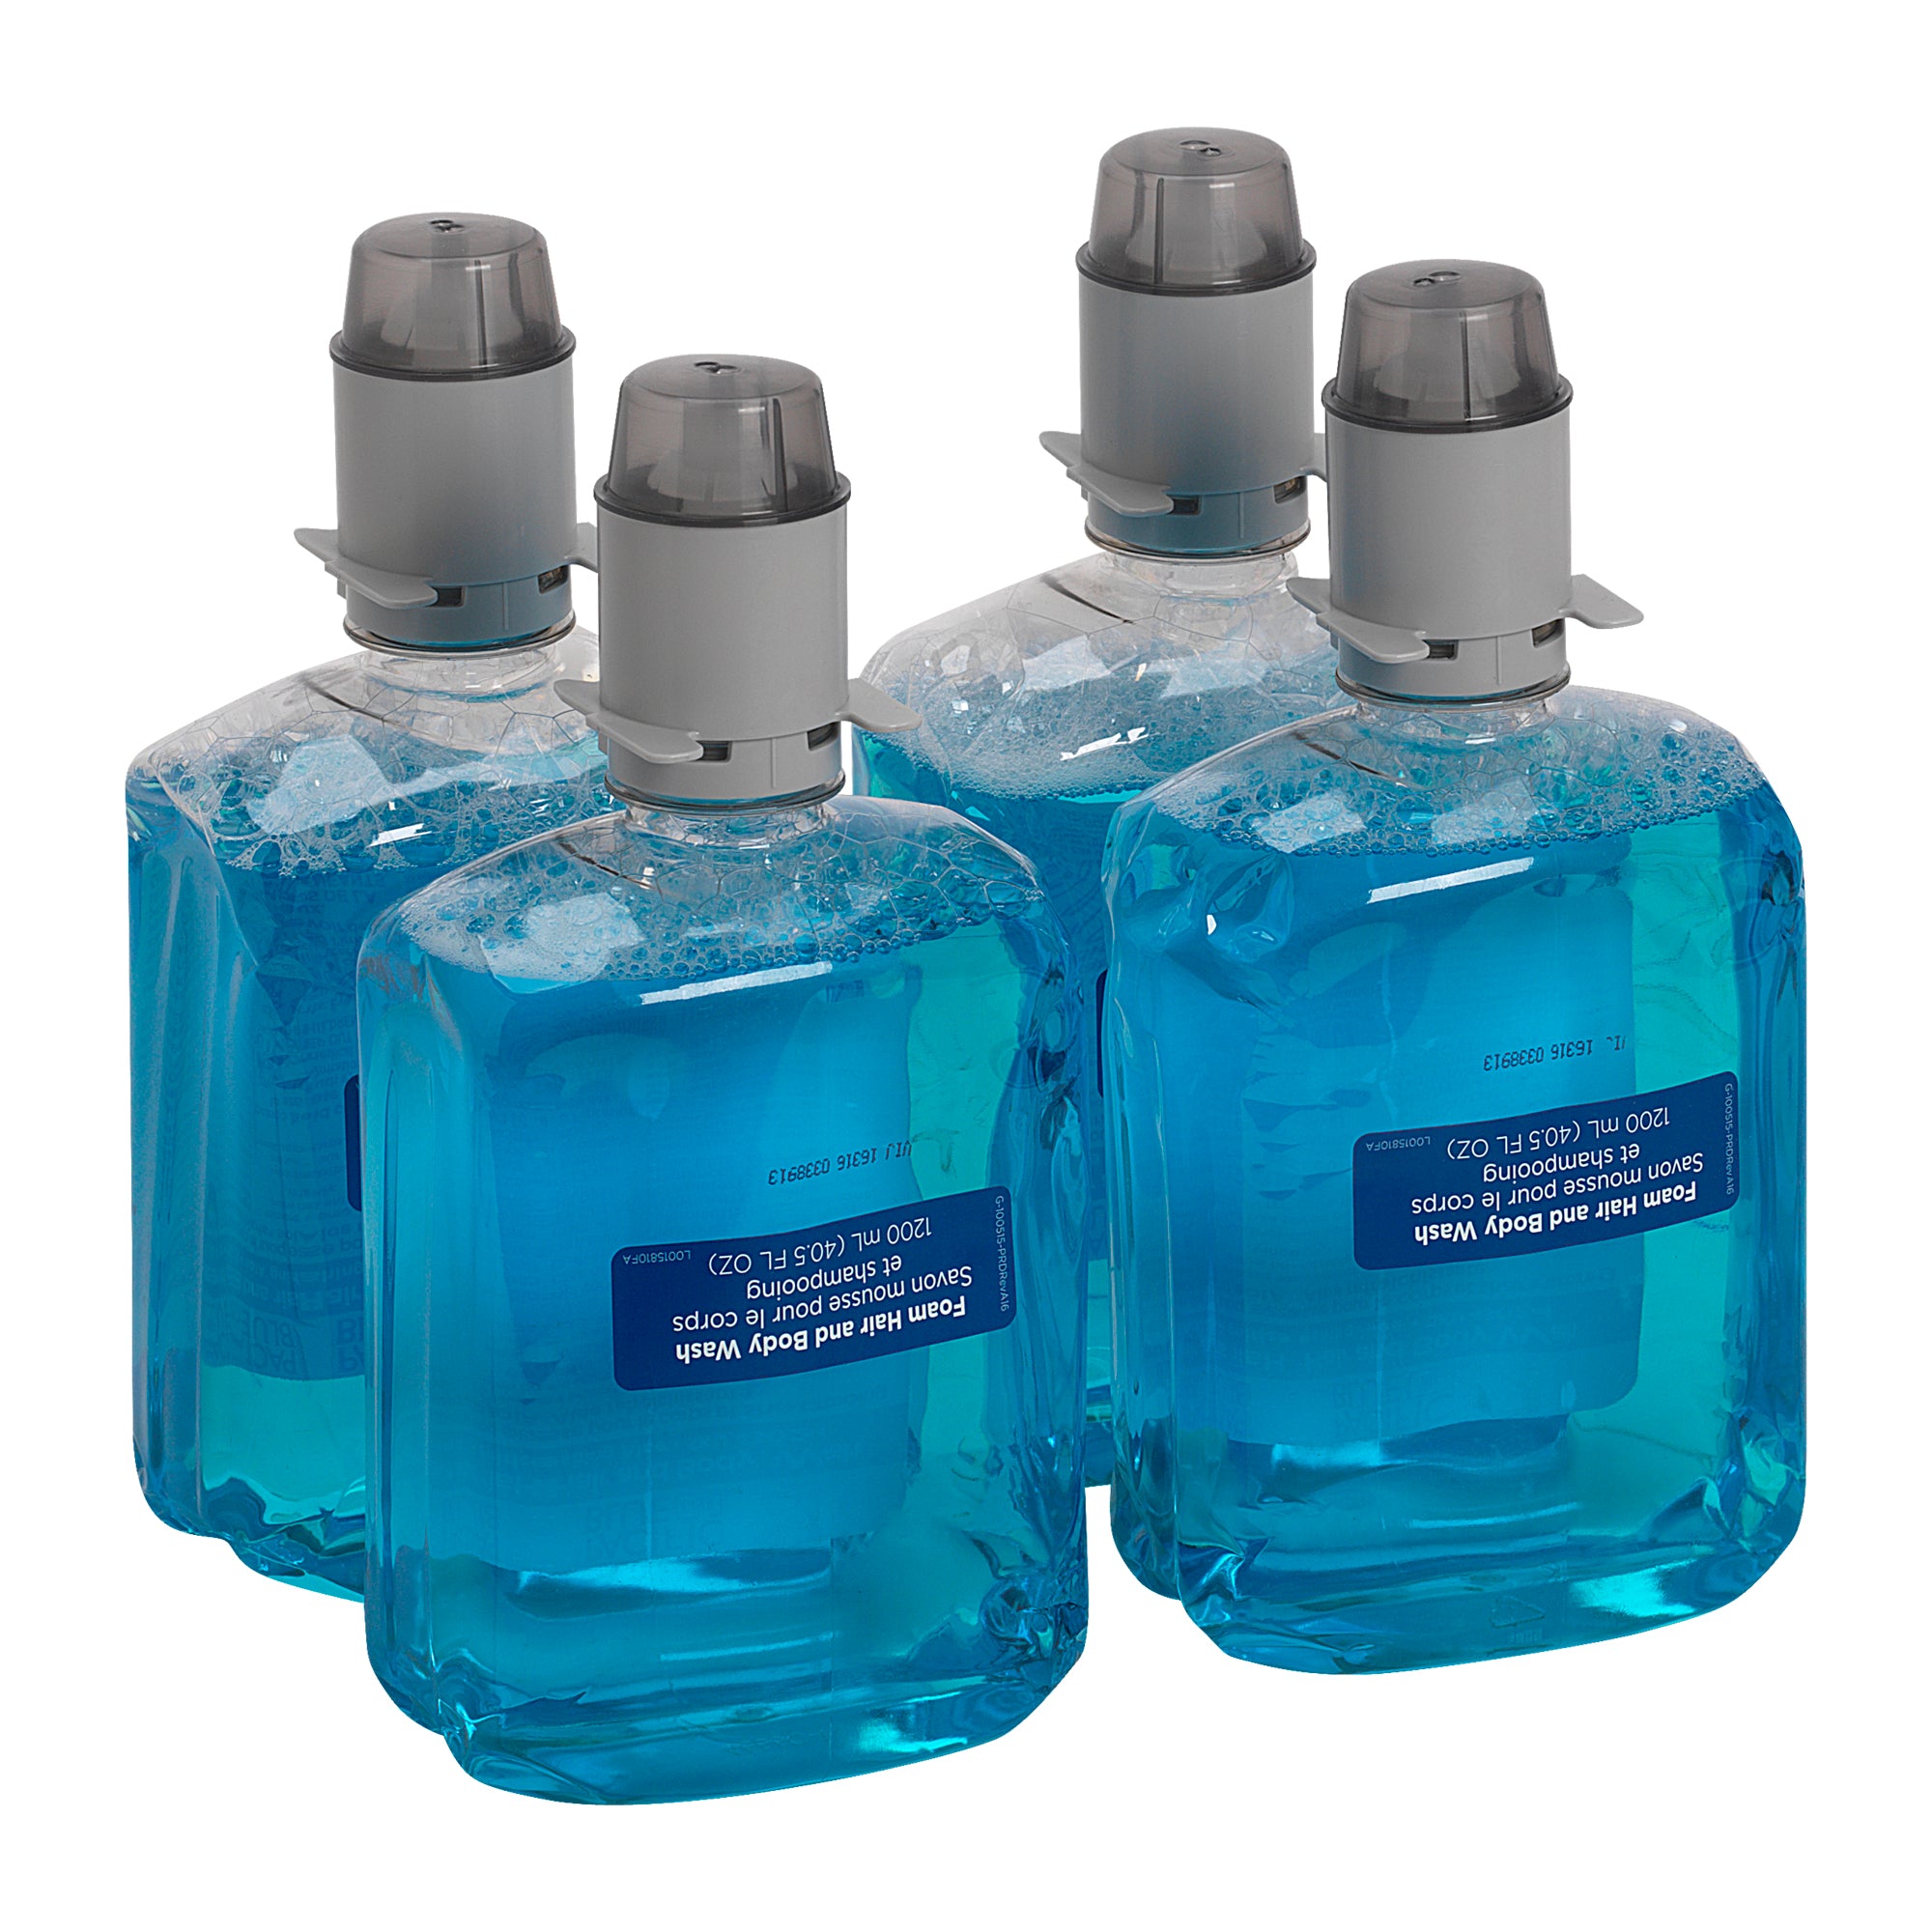 סבון לשטיפת שיער וגוף PACIFIC BLUE ULTRA™ למתקנים ידניים מבית GP PRO, אלוורה מרעננת, (4 בקבוקים של 1,200 mL סהכ 4,800 mL)